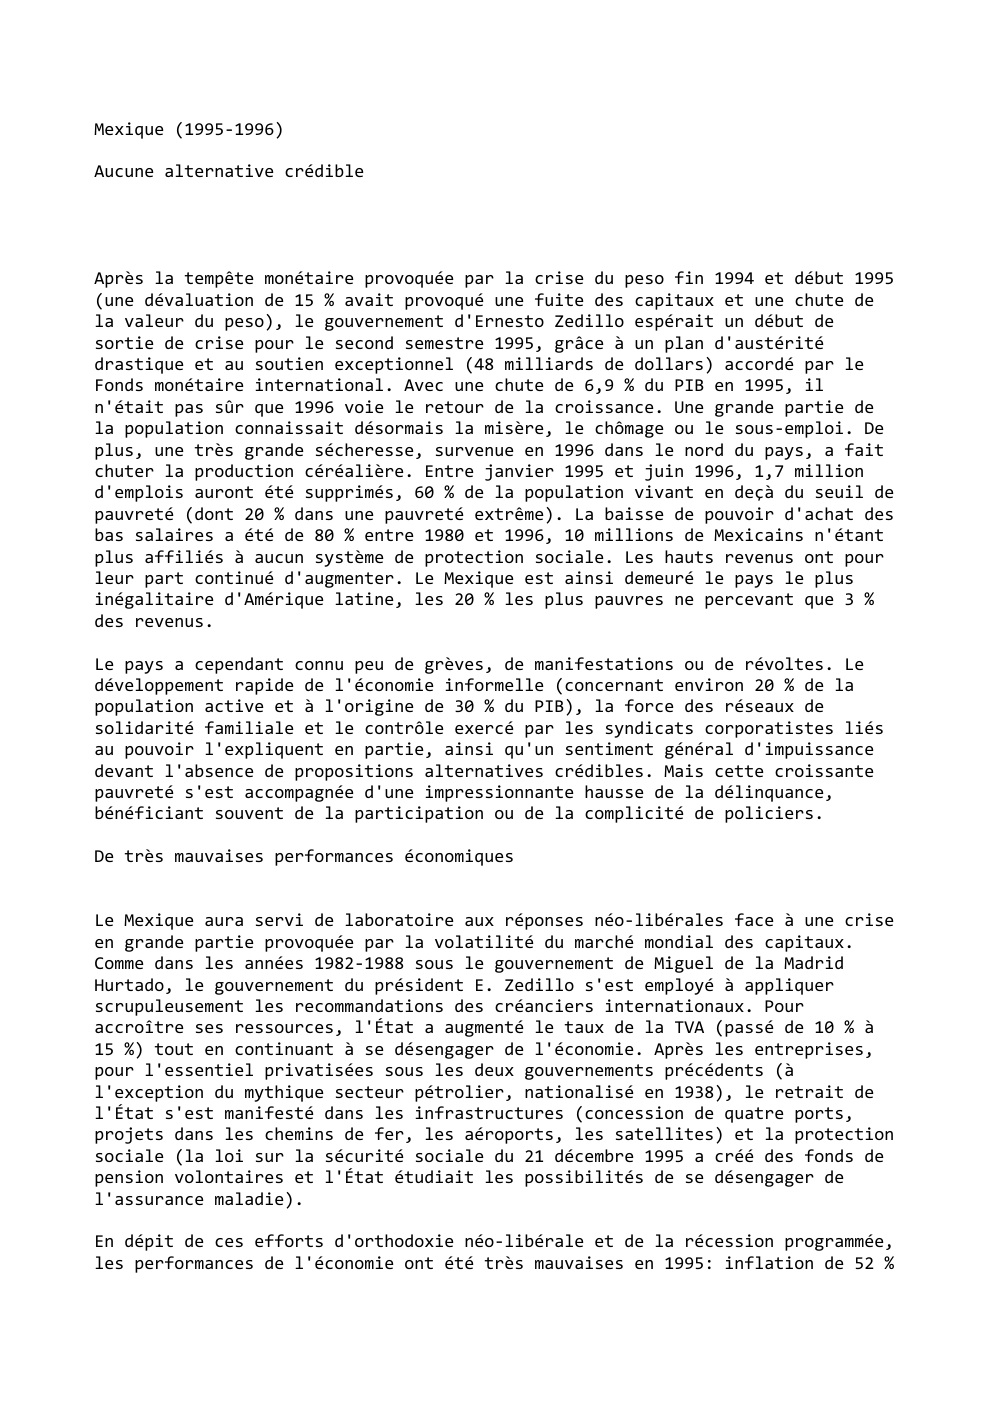 Prévisualisation du document Mexique (1995-1996)
Aucune alternative crédible

Après la tempête monétaire provoquée par la crise du peso fin 1994 et début 1995...